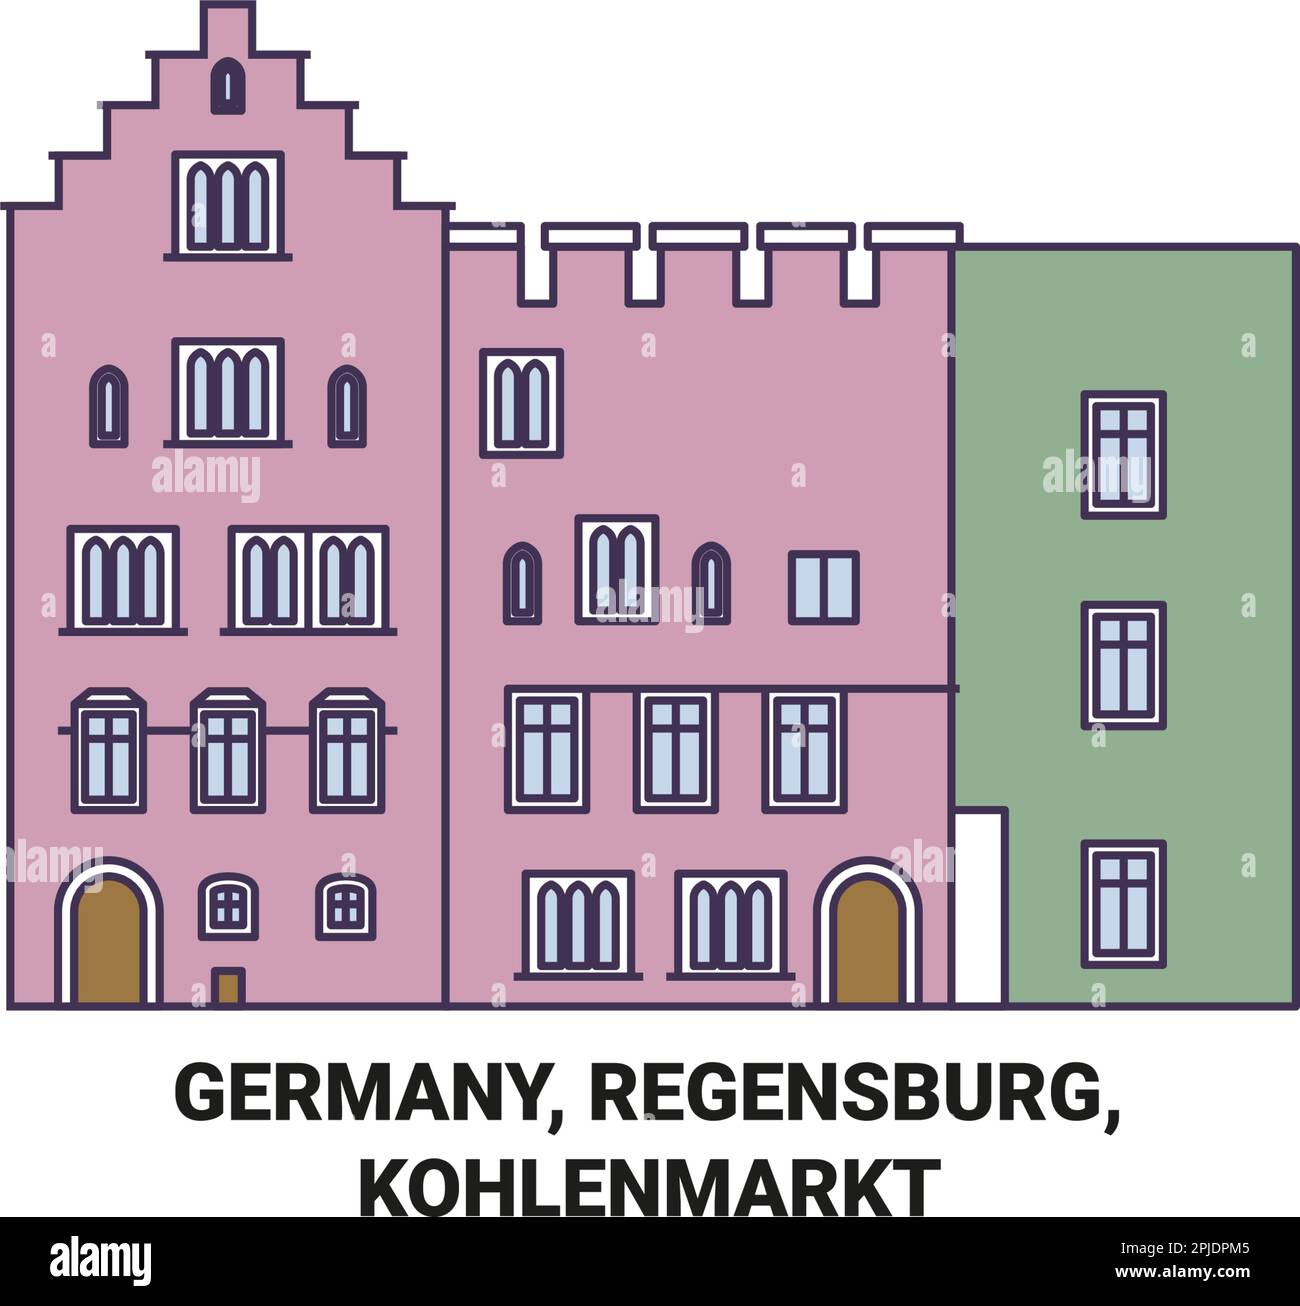 Germany, Regensburg, Kohlenmarkt travel landmark vector illustration Stock Vector